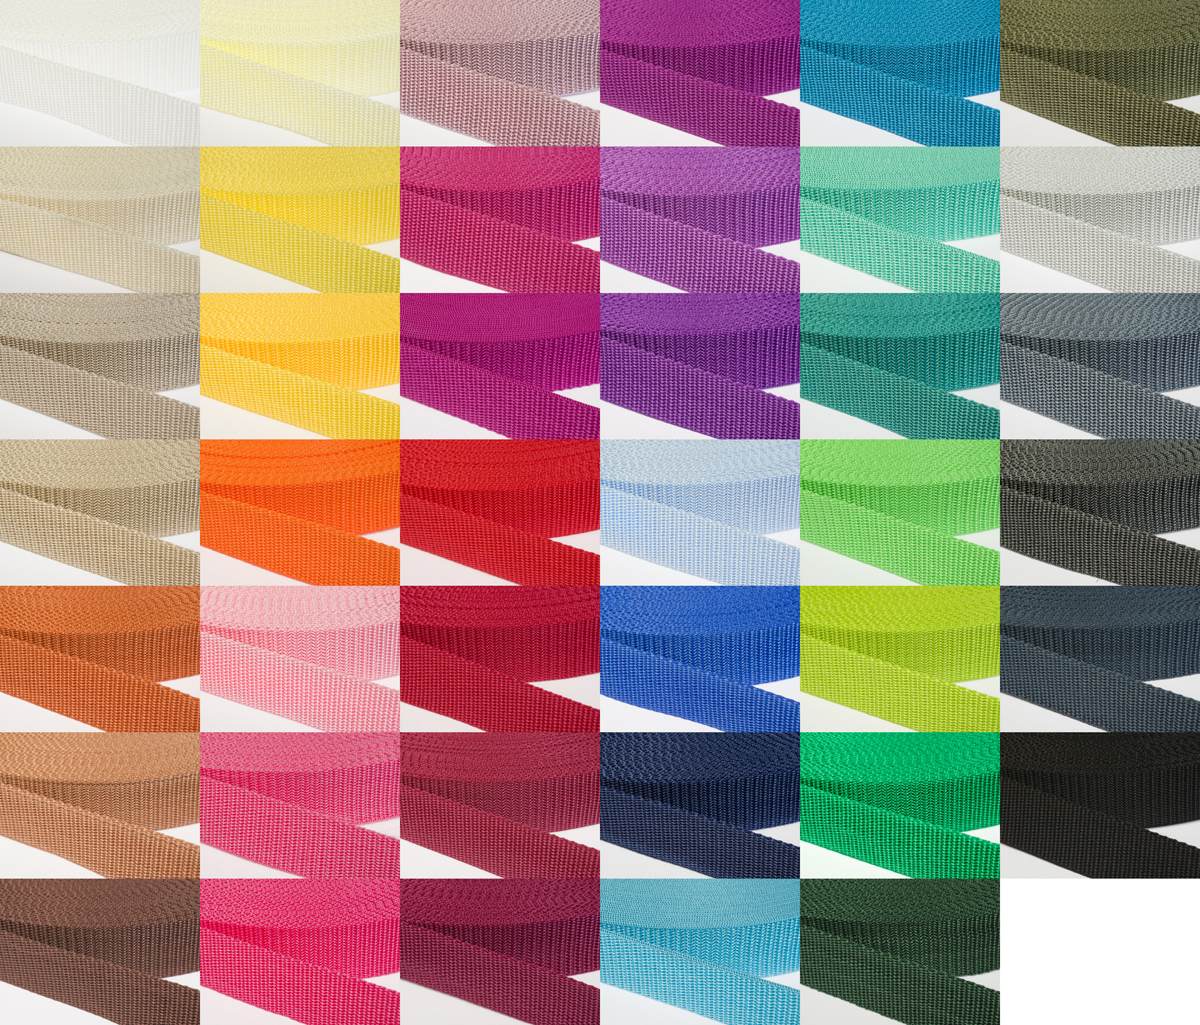 Gurtband 30mm breit aus Polypropylen in 41 Farben 19 - rot 12 Meter